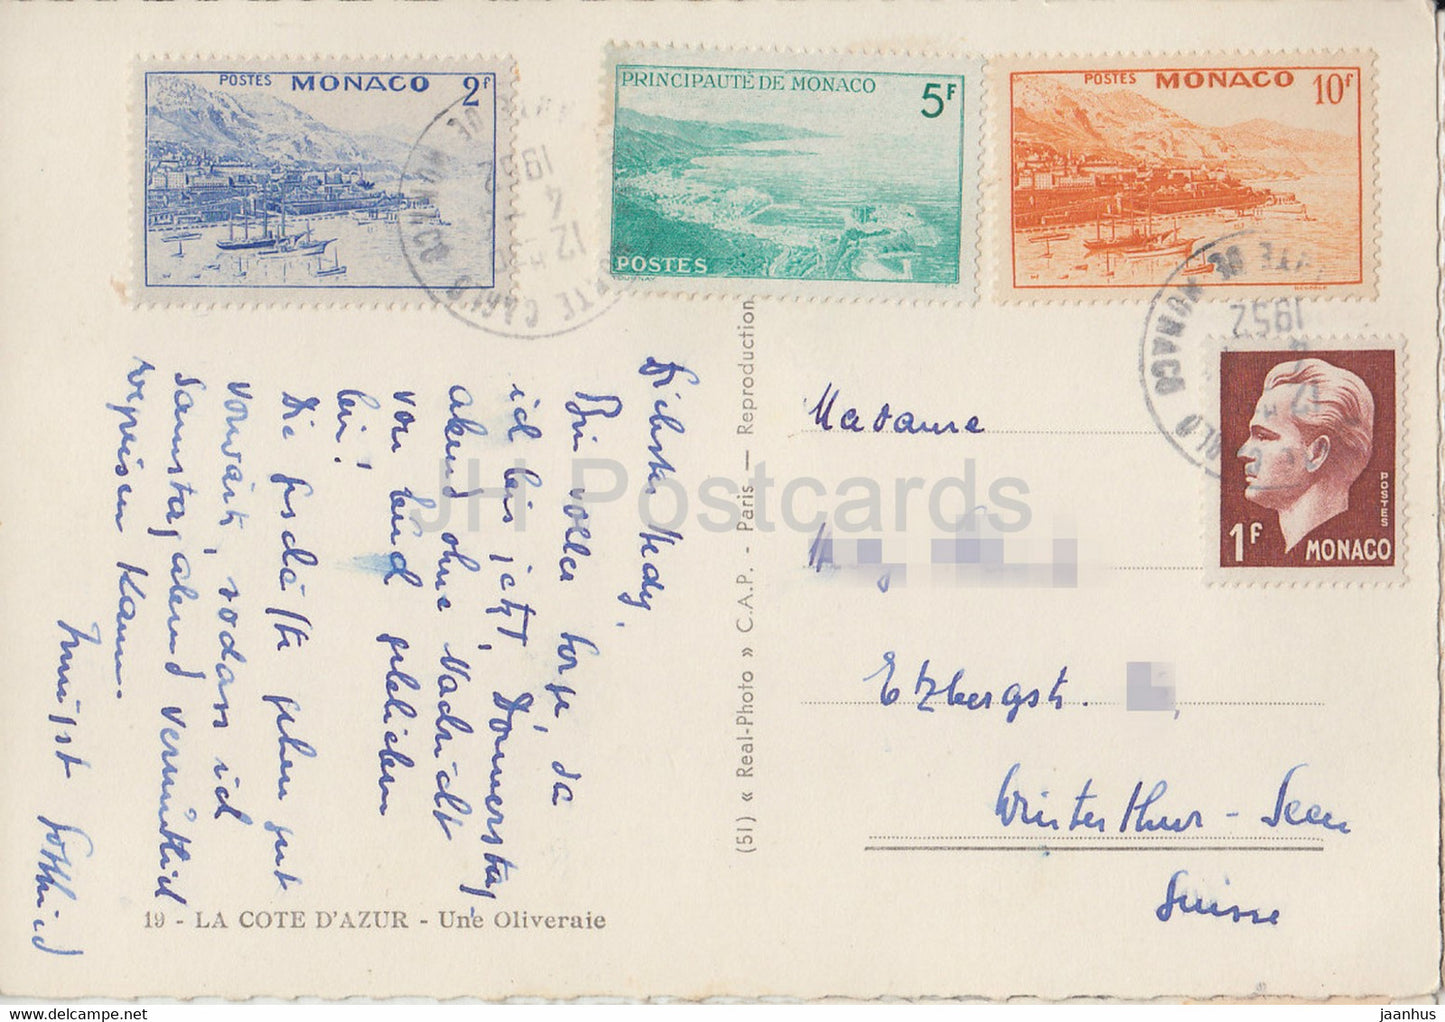 La Côte d'Azur - Une Oliveraie - carte postale ancienne - 1952 - France - occasion